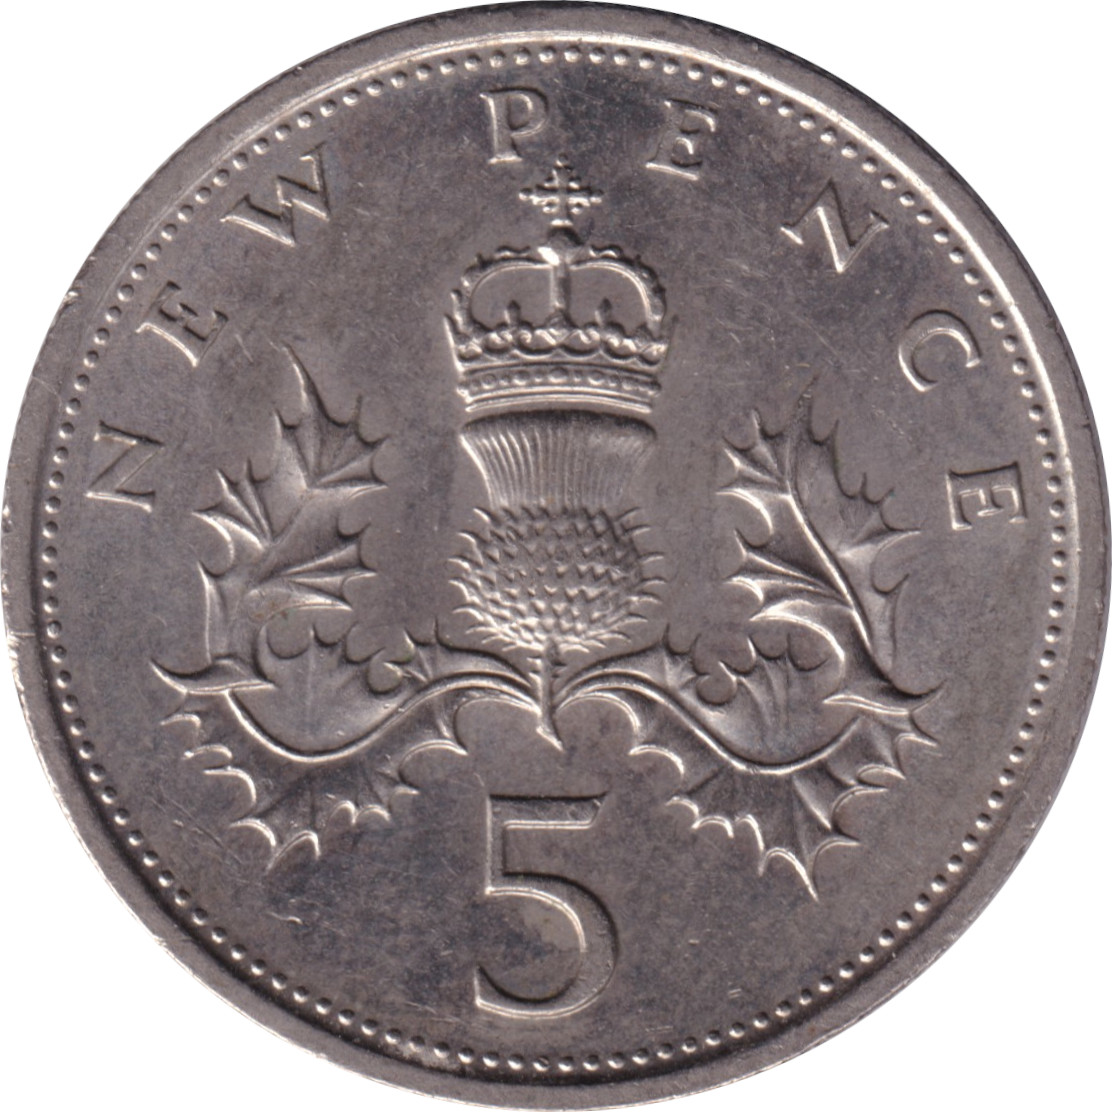 5 pence - Elizabeth II - Buste jeune